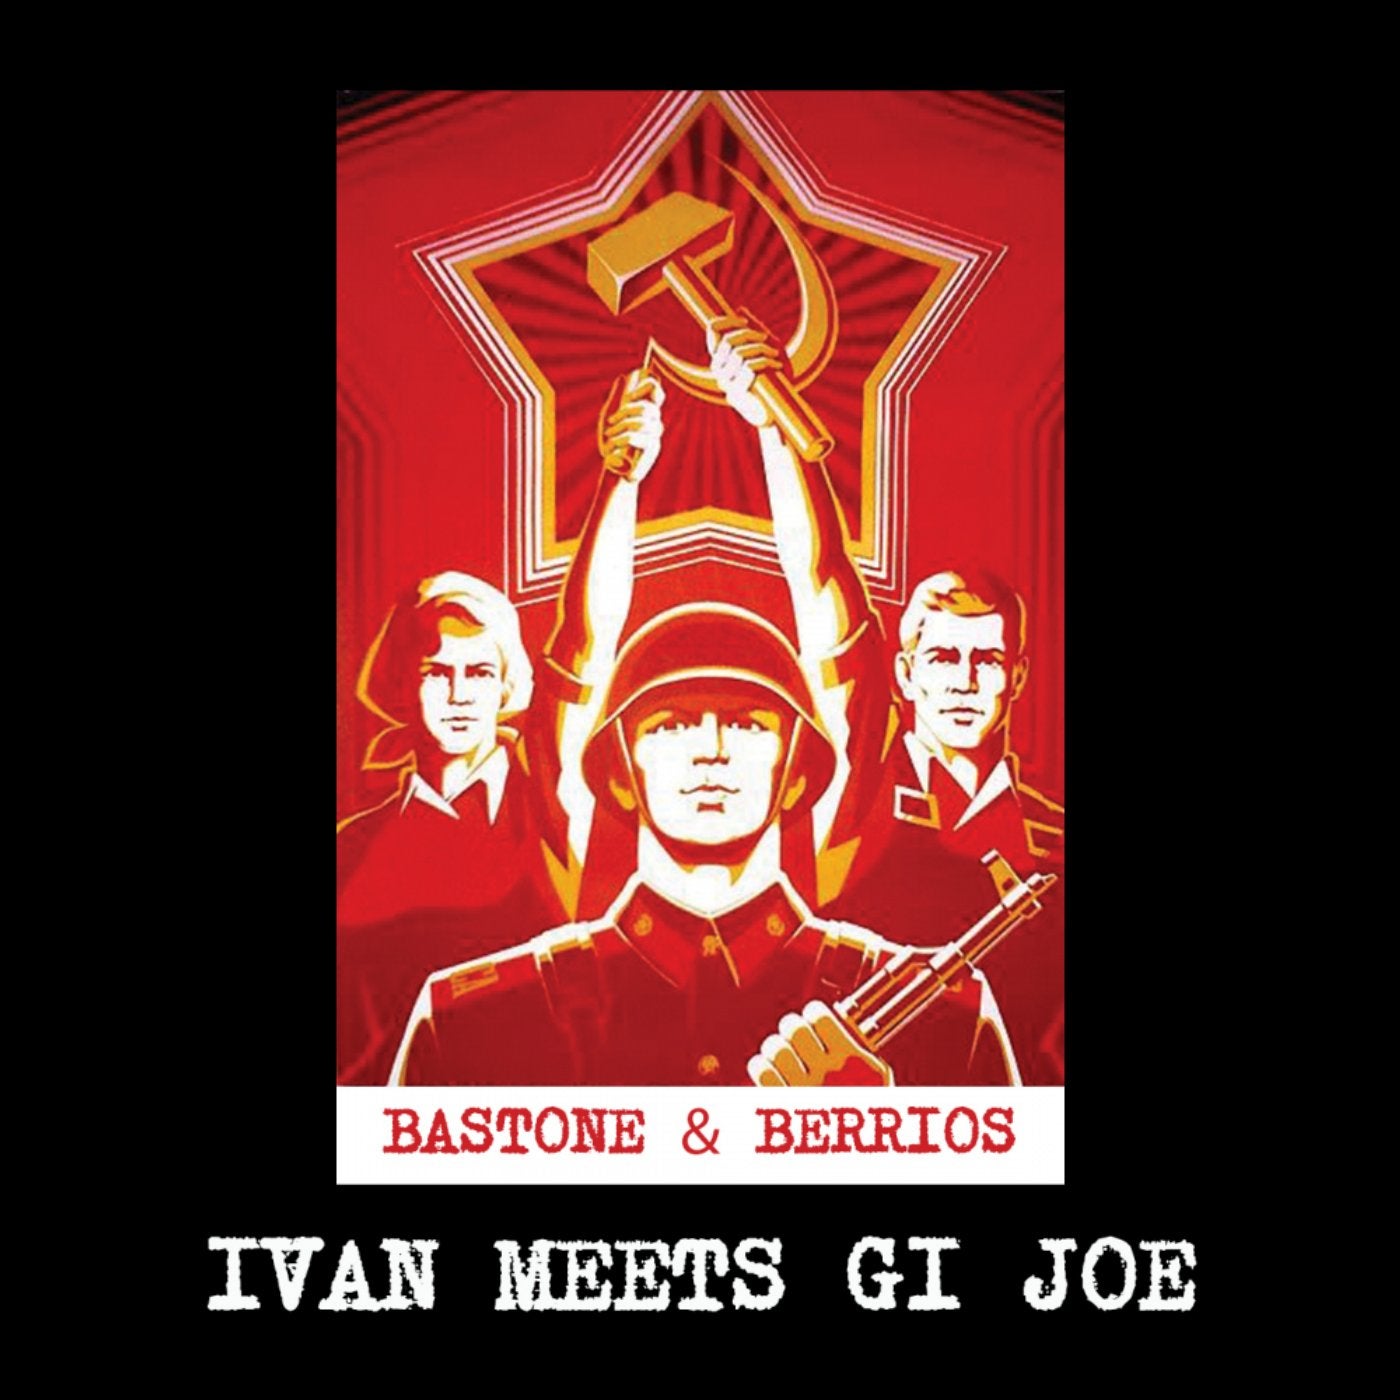 Ivan Meets Gi Joe